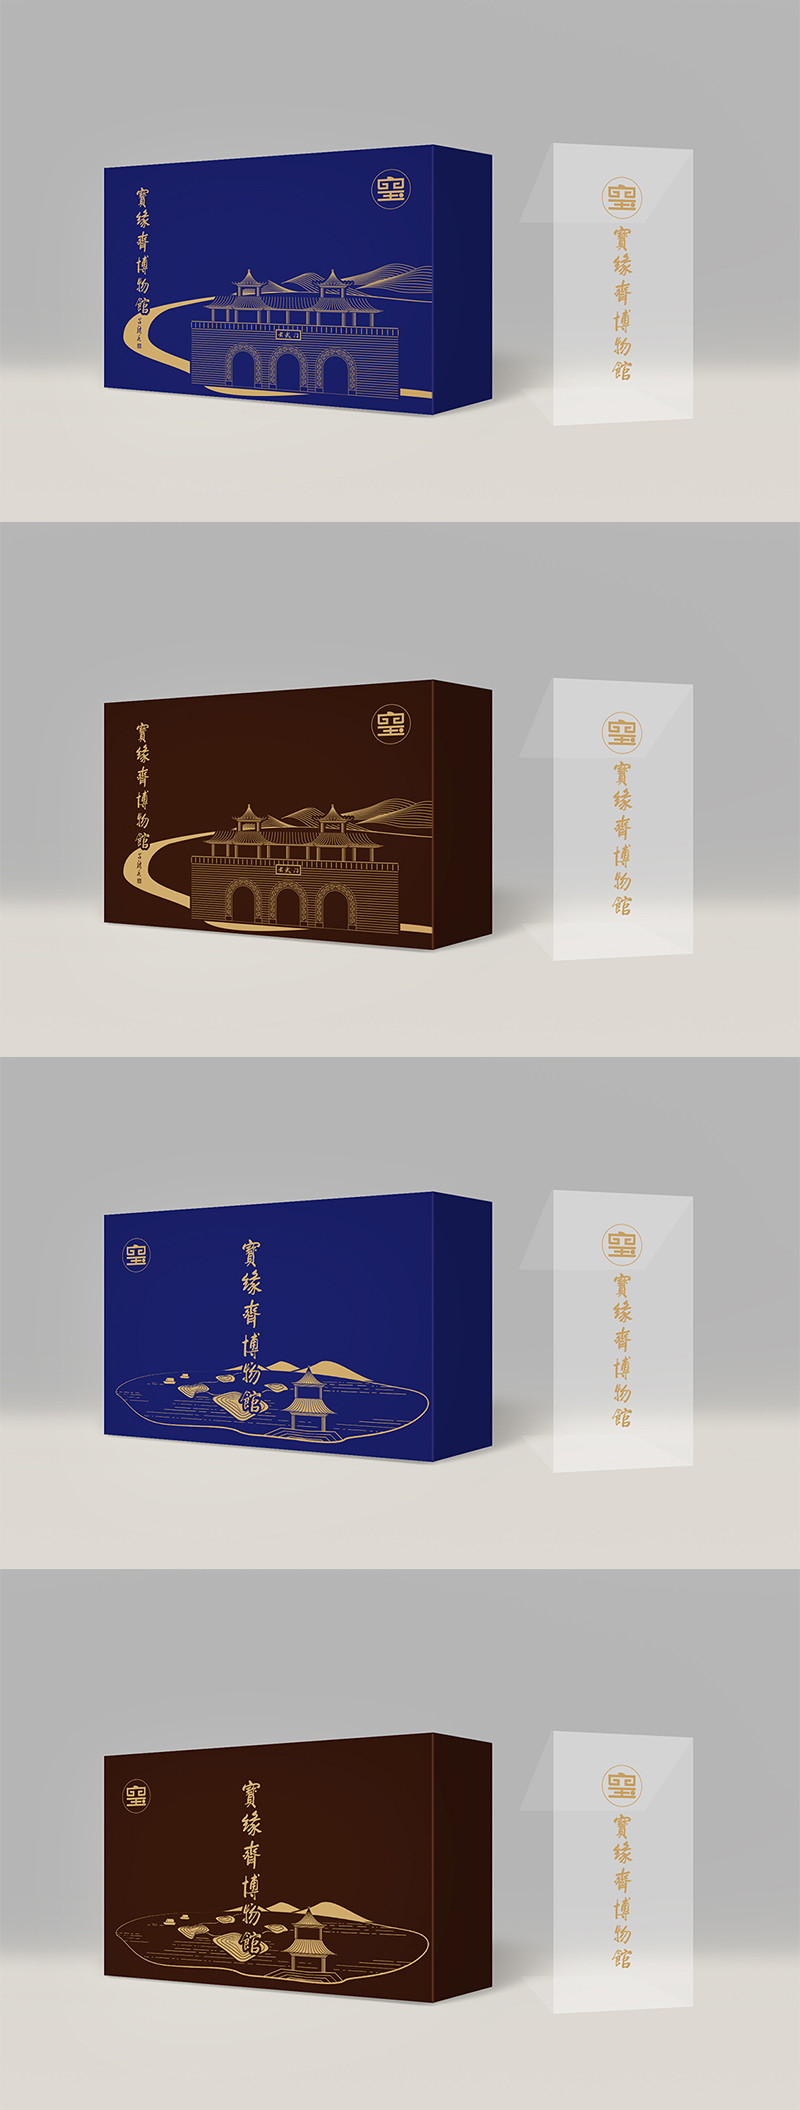 南京宝缘斋博物馆礼盒设计